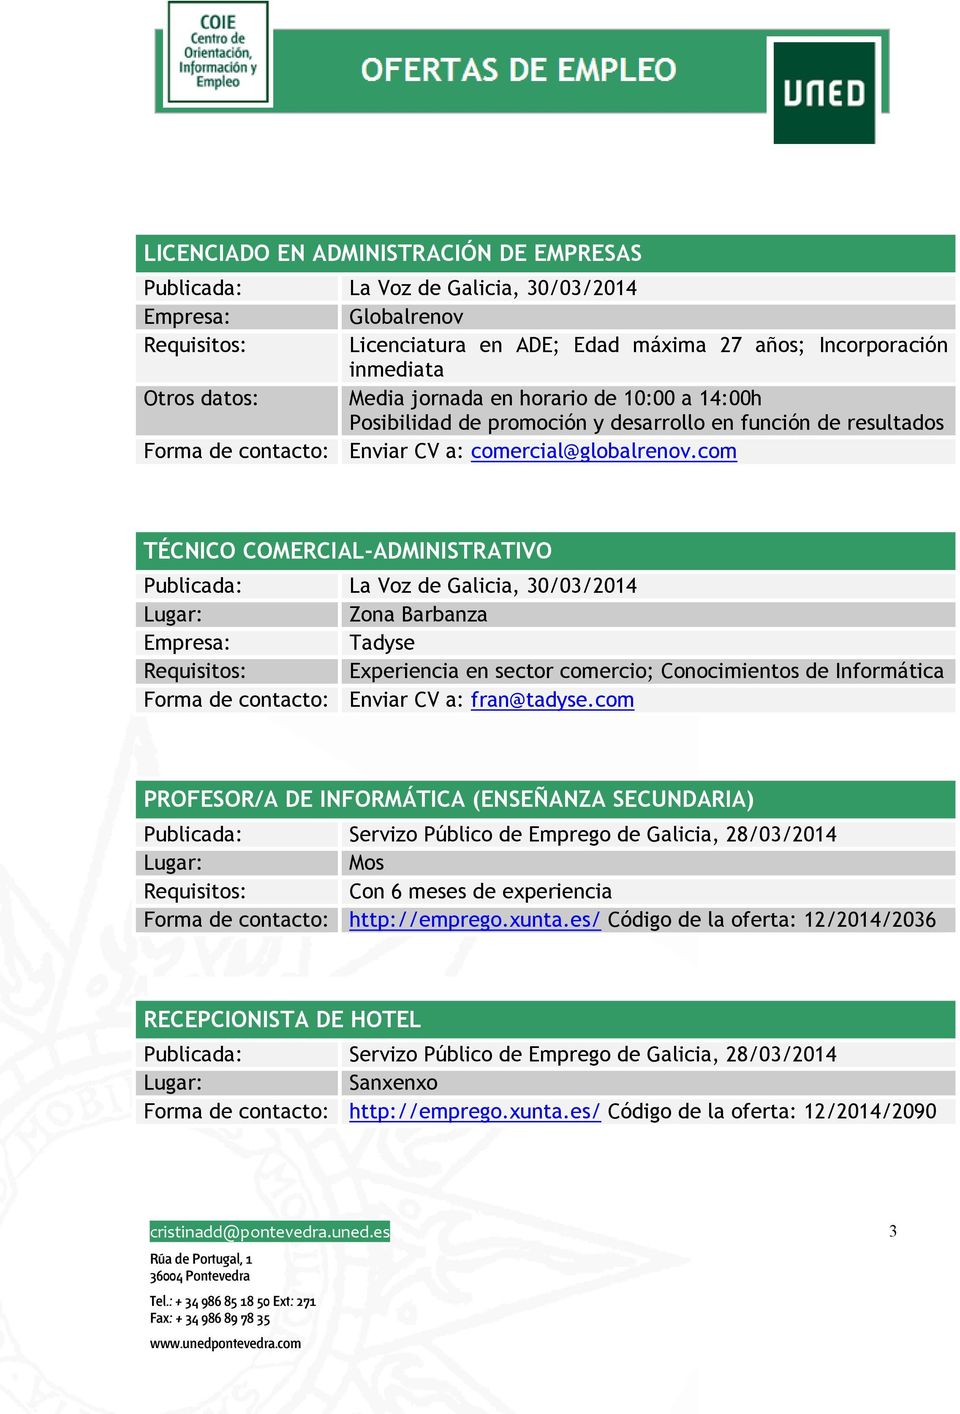 com TÉCNICO COMERCIAL-ADMINISTRATIVO Publicada: La Voz de Galicia, 30/03/2014 Zona Barbanza Empresa: Tadyse Requisitos: Experiencia en sector comercio; Conocimientos de Informática Forma de contacto: